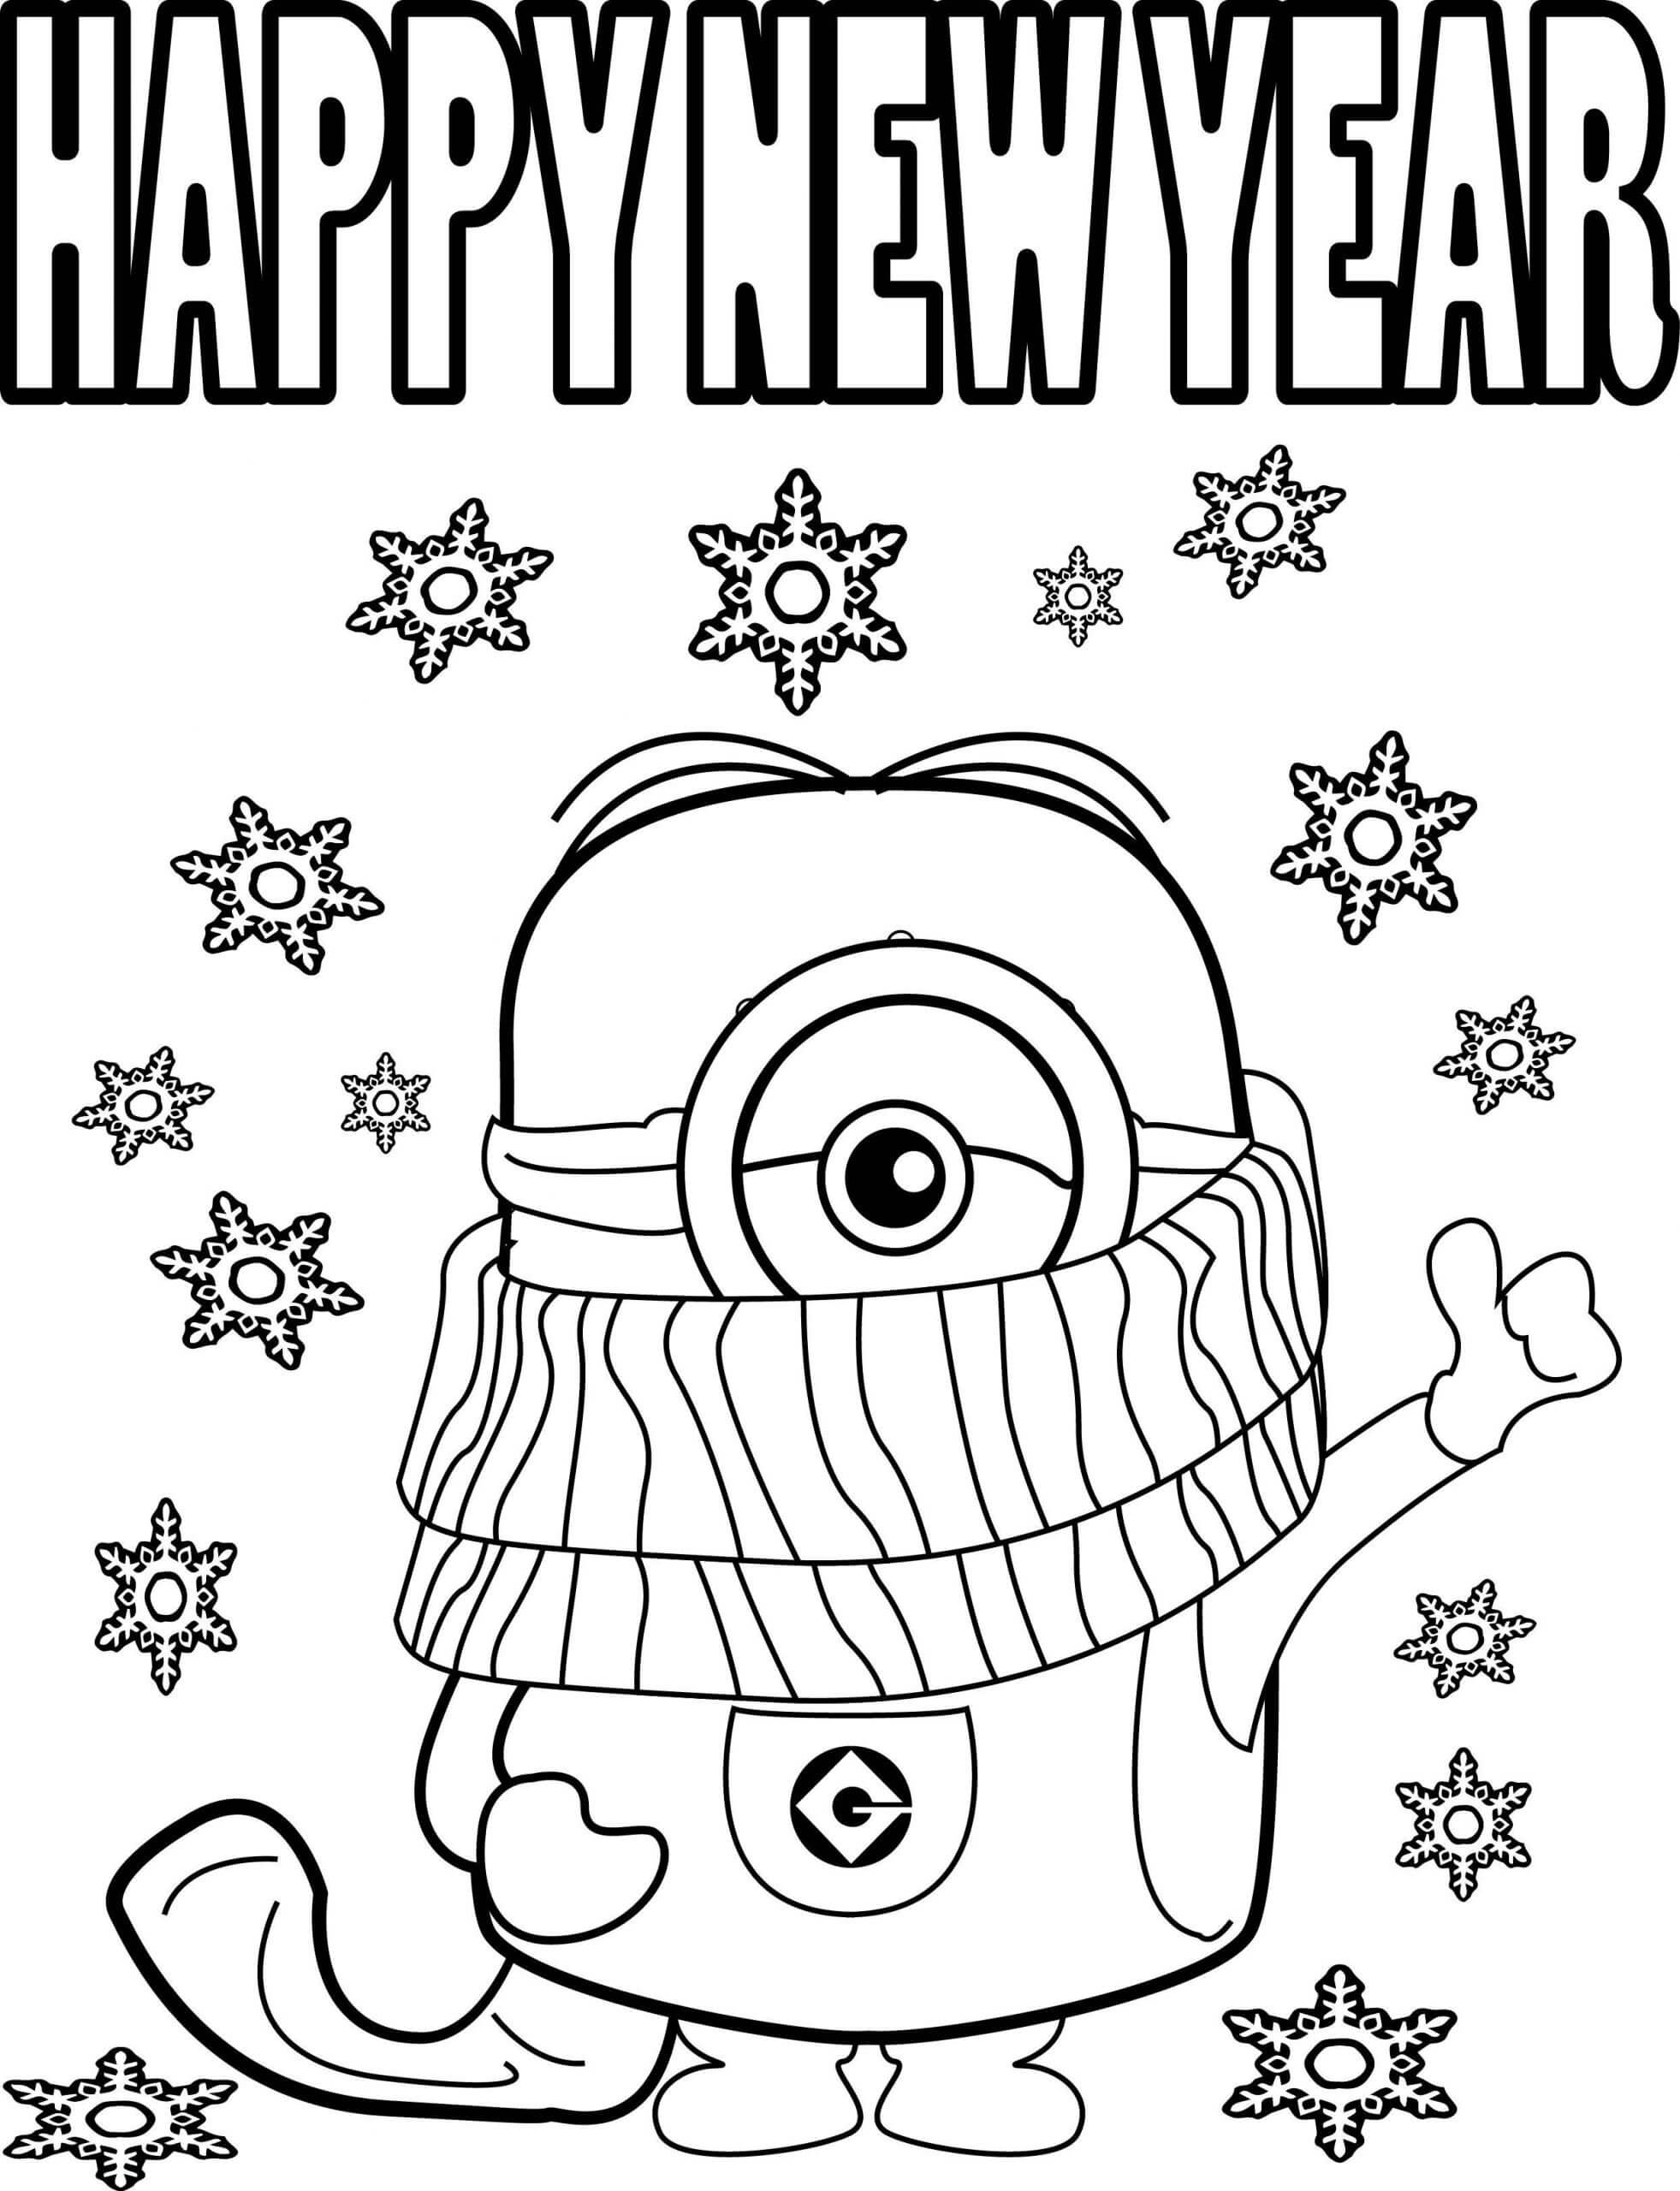 Раскраска Миньон Стюарт желает весёлого Нового года